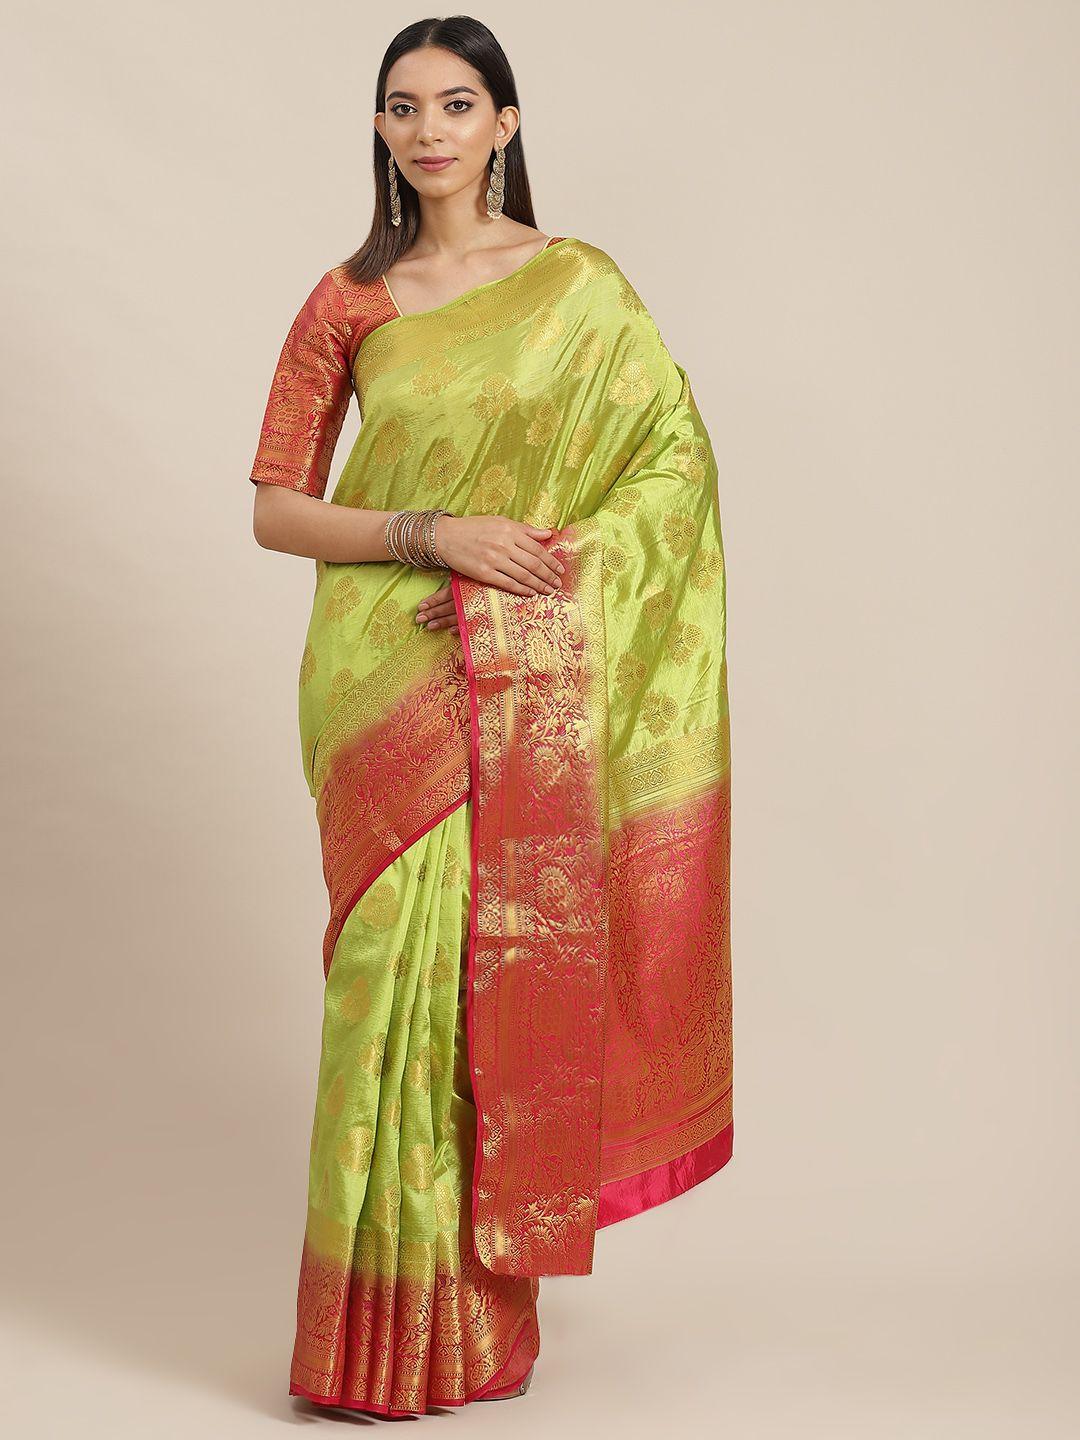 rajgranth lime green & red ethnic motifs ready to wear banarasi saree